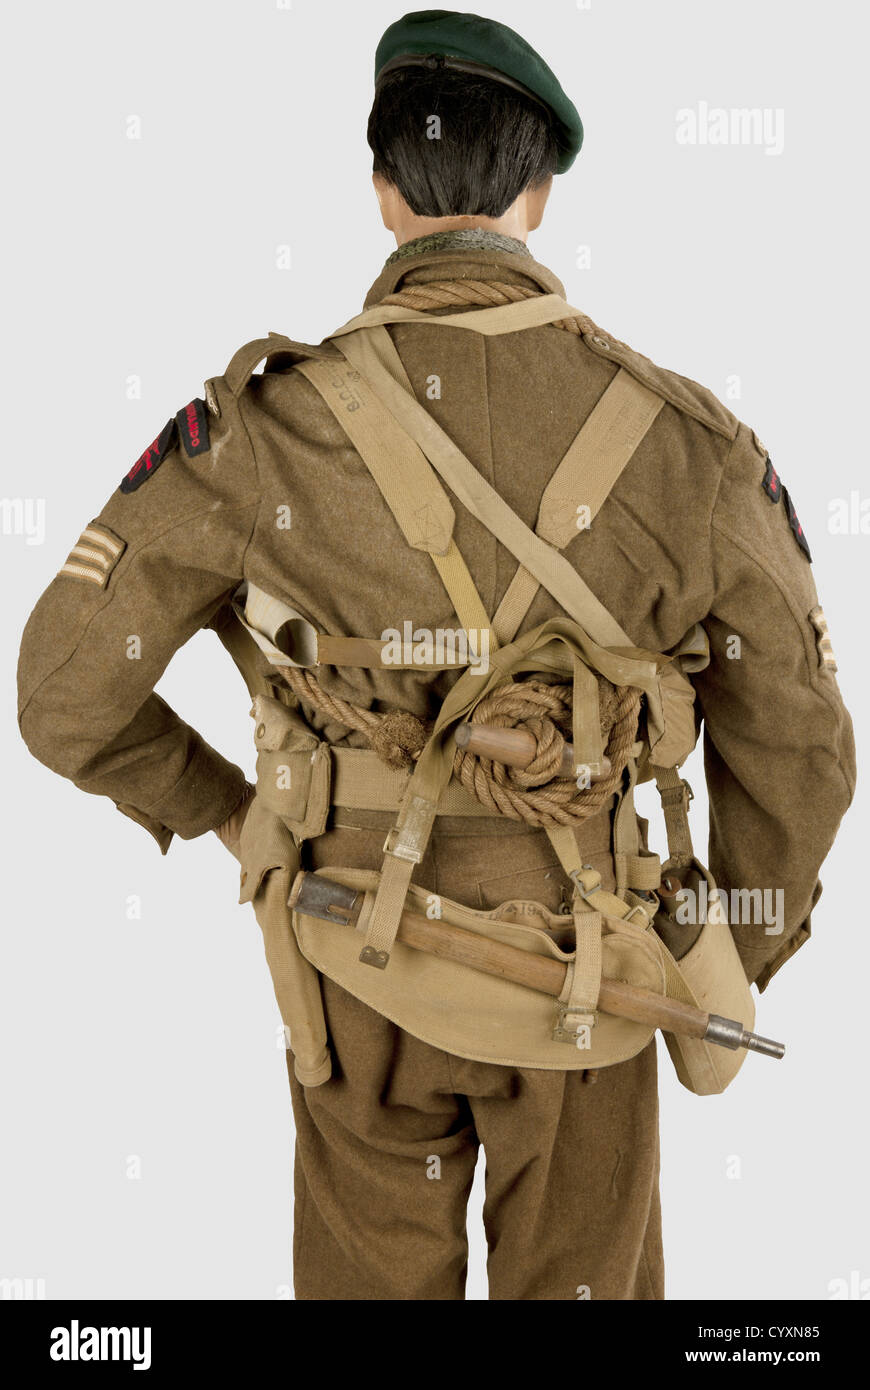 ARMEES ALLIEES 1939-1945,Commando du Premier Bataillon de Fusiliers Marins,dit 'Commando Kieffer'. Sur Mannequin complet(main droite manquante,la Gauche collée),comprenant un béret vert de commando,pourtour cuir,marqué sur la doublure noire 'Kangol Wear Limited',flèche du WD,'1944',taille '6 1/4'(restes d'étiquette Papier déchirée),insigne '1er Bllon F.M. COMMANDO', revers marqué 'J R GAUNT C1943'. Blouson de Battledress Anglais Muster 1940 avec tous ses boutons,étiquette intérieure 'A. Elbaum & Co Ltd, 1945(?)', Tampon de taille '15'. Insignes,Additional-Rights-Clearences-Not Available Stockfoto